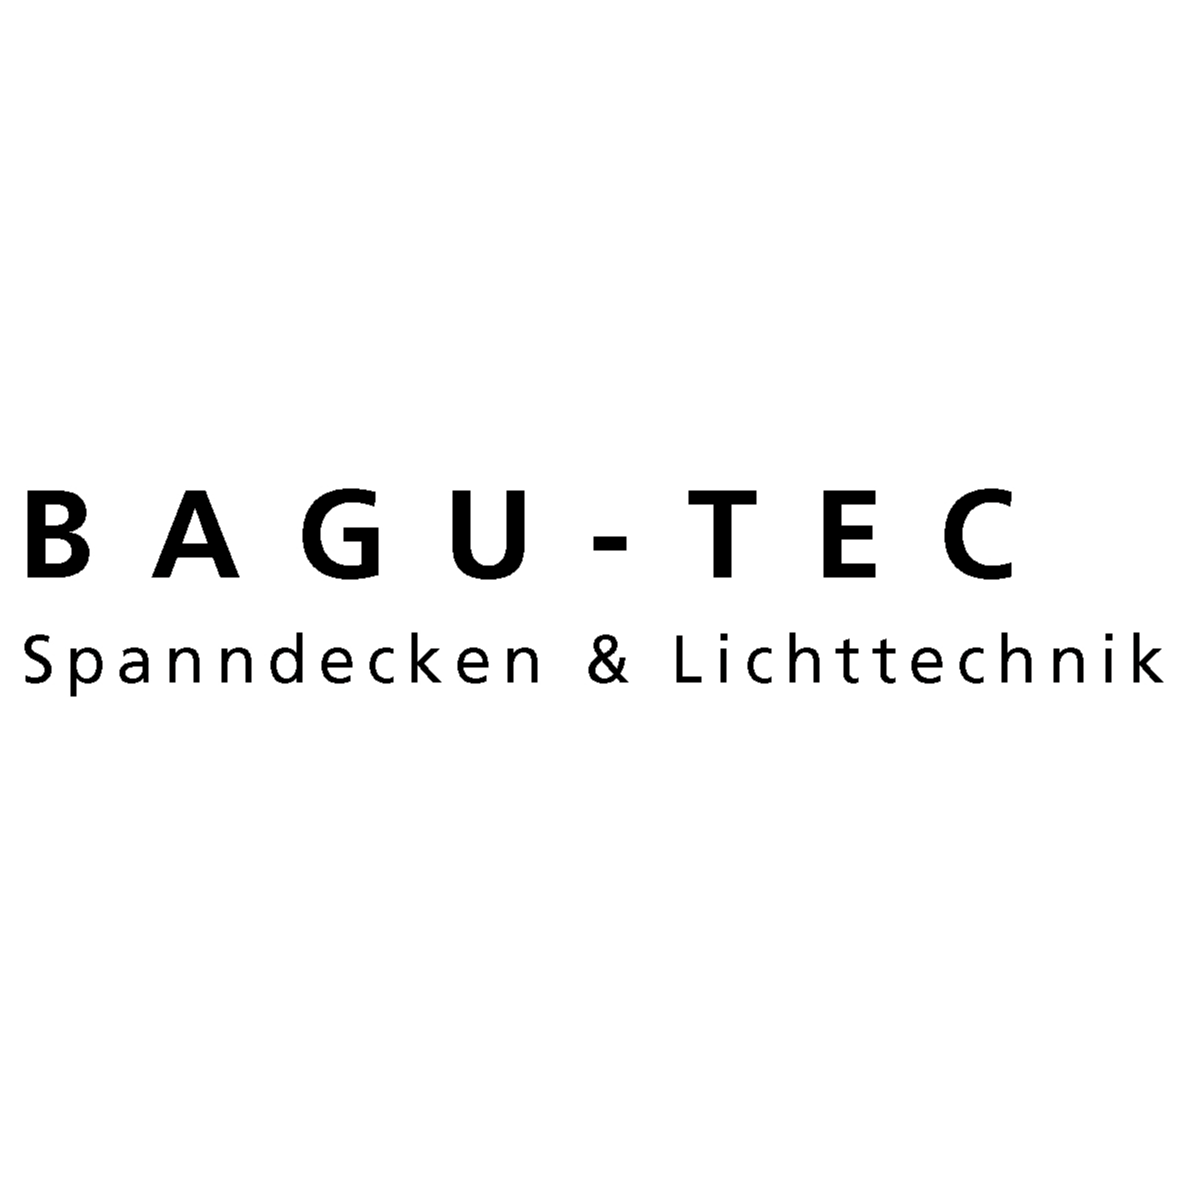 BAGU-TEC Spanndecken & Lichttechnik in Wiesbaden - Logo